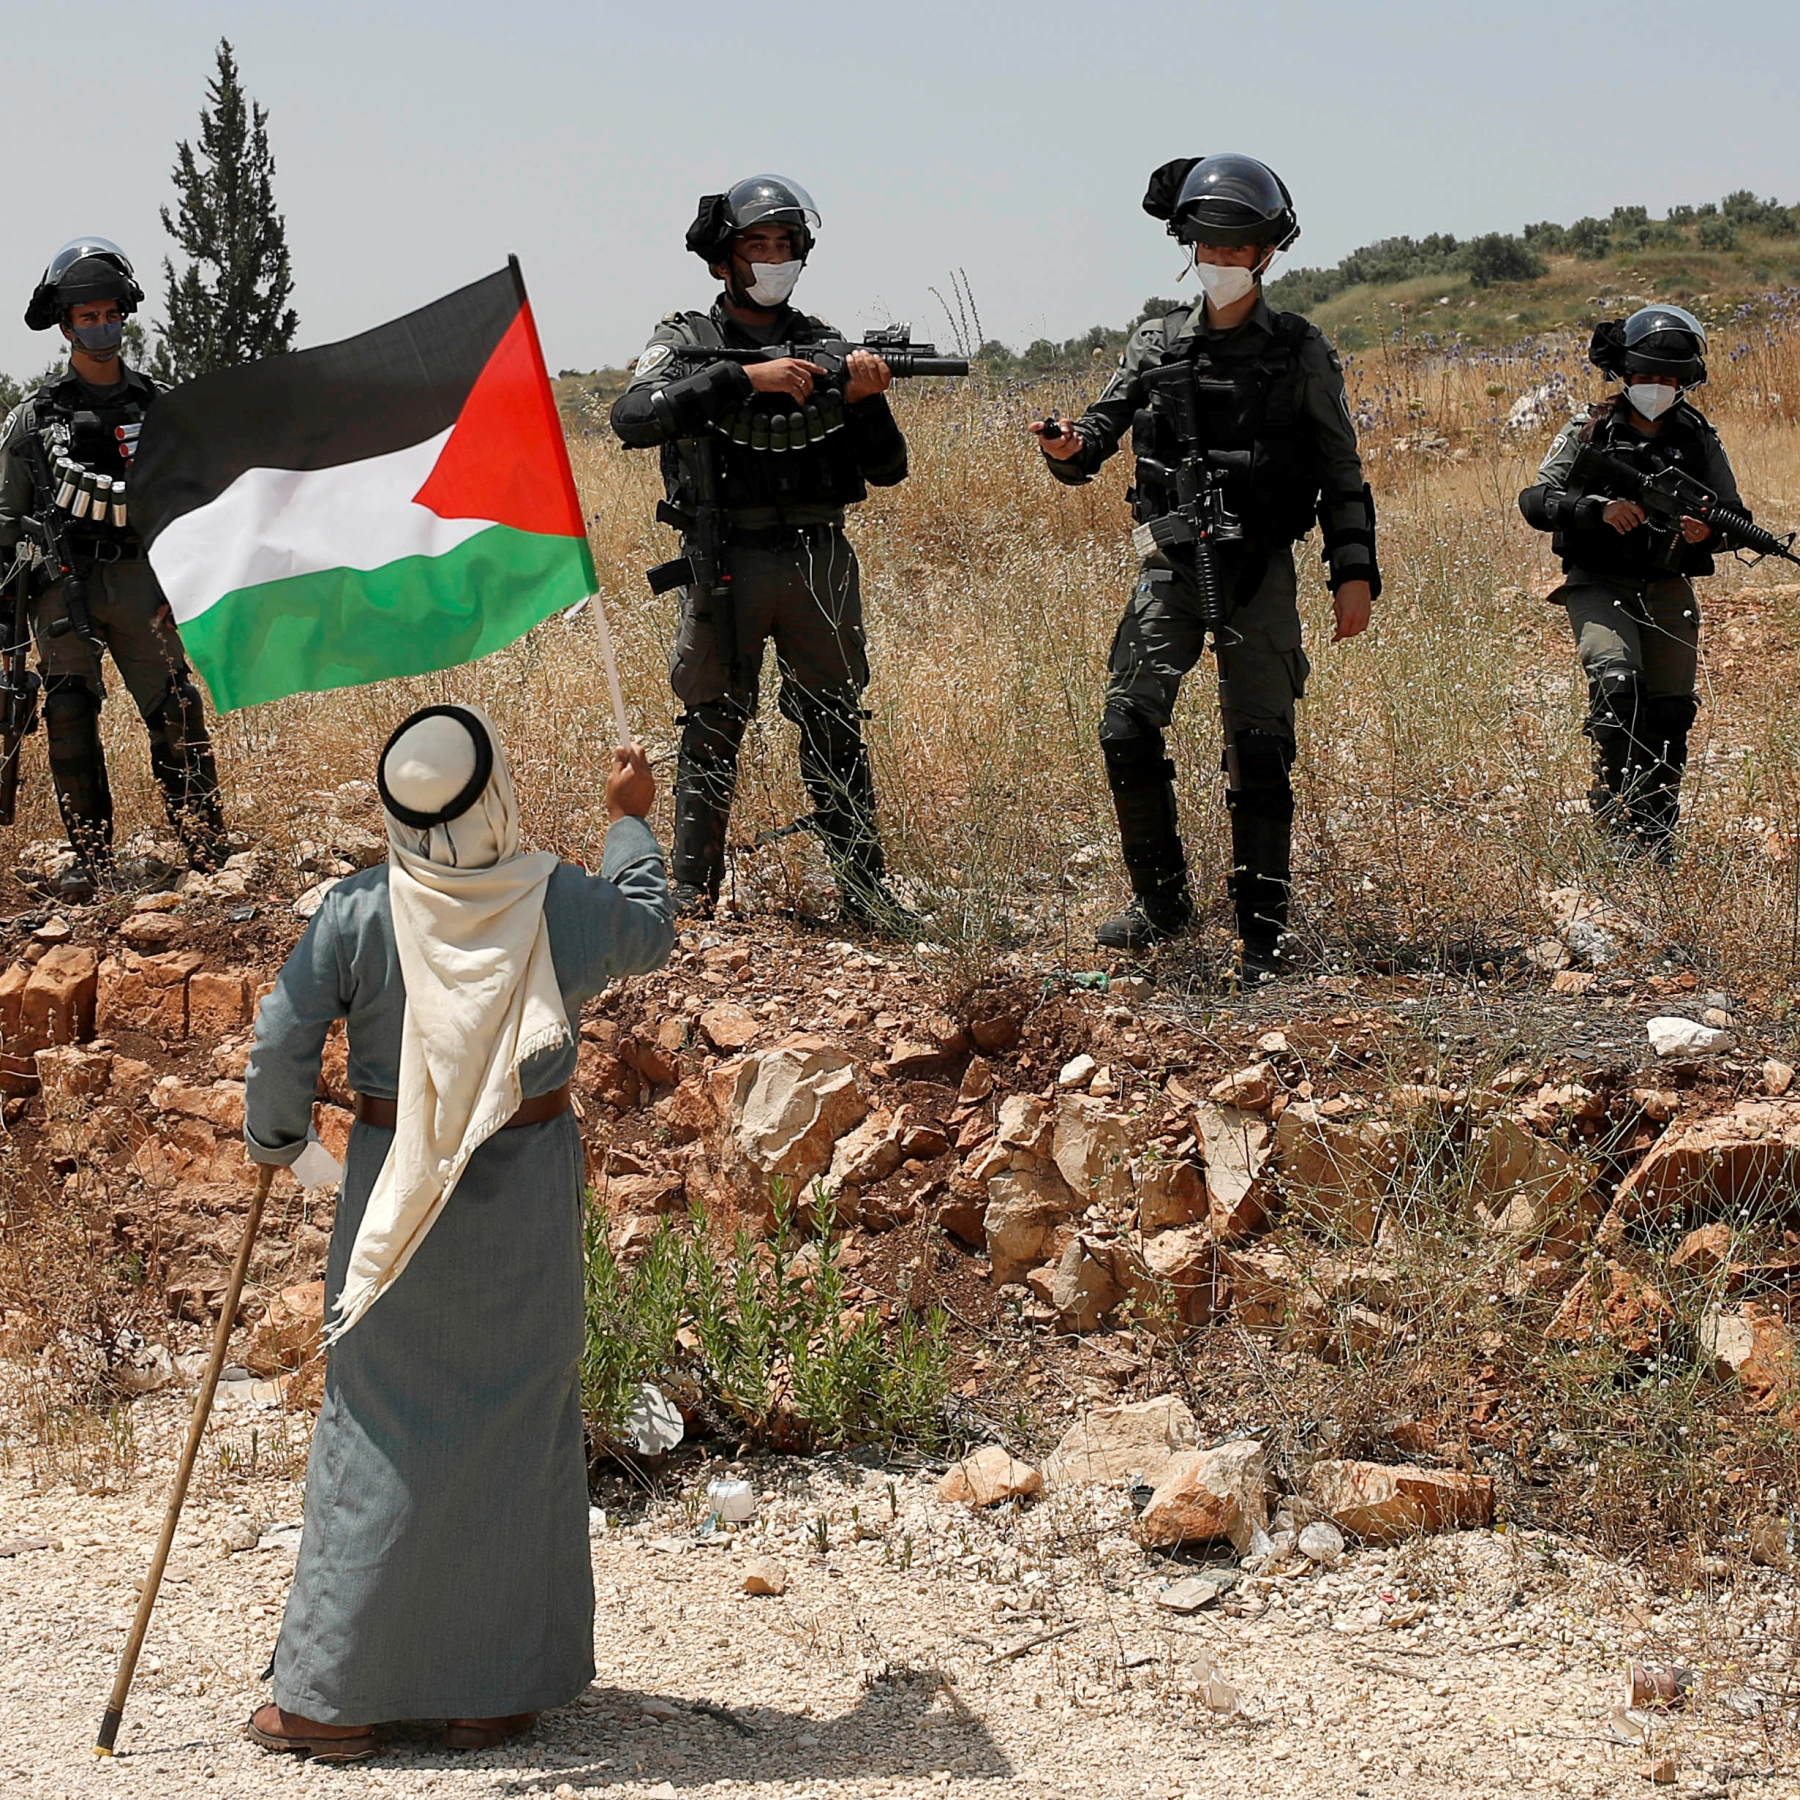 نشر البروفيسور جون كويغلي بحثاً بعنوان "منع عودة العرب الفلسطينيين إلى إسرائيل كجريمة ضد الإنسانية" - القانون من أجل فلسطين